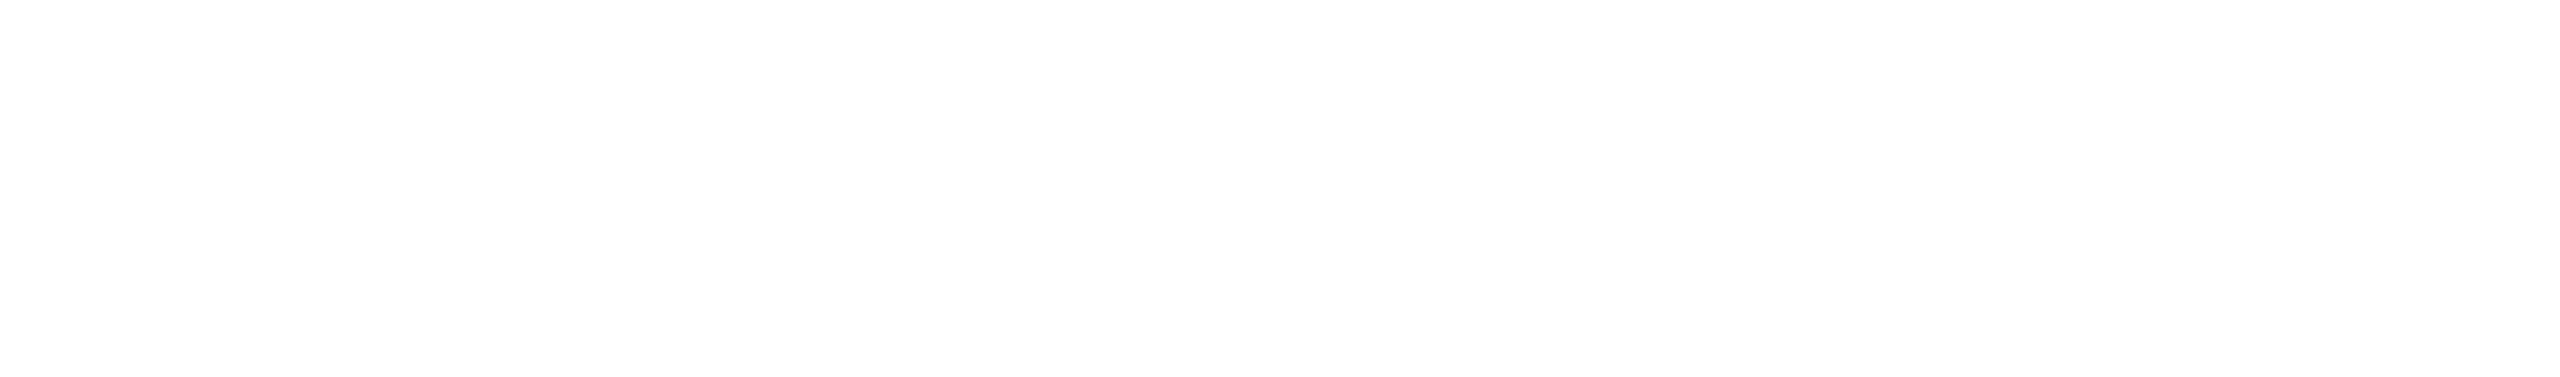 Wit Devialet logo